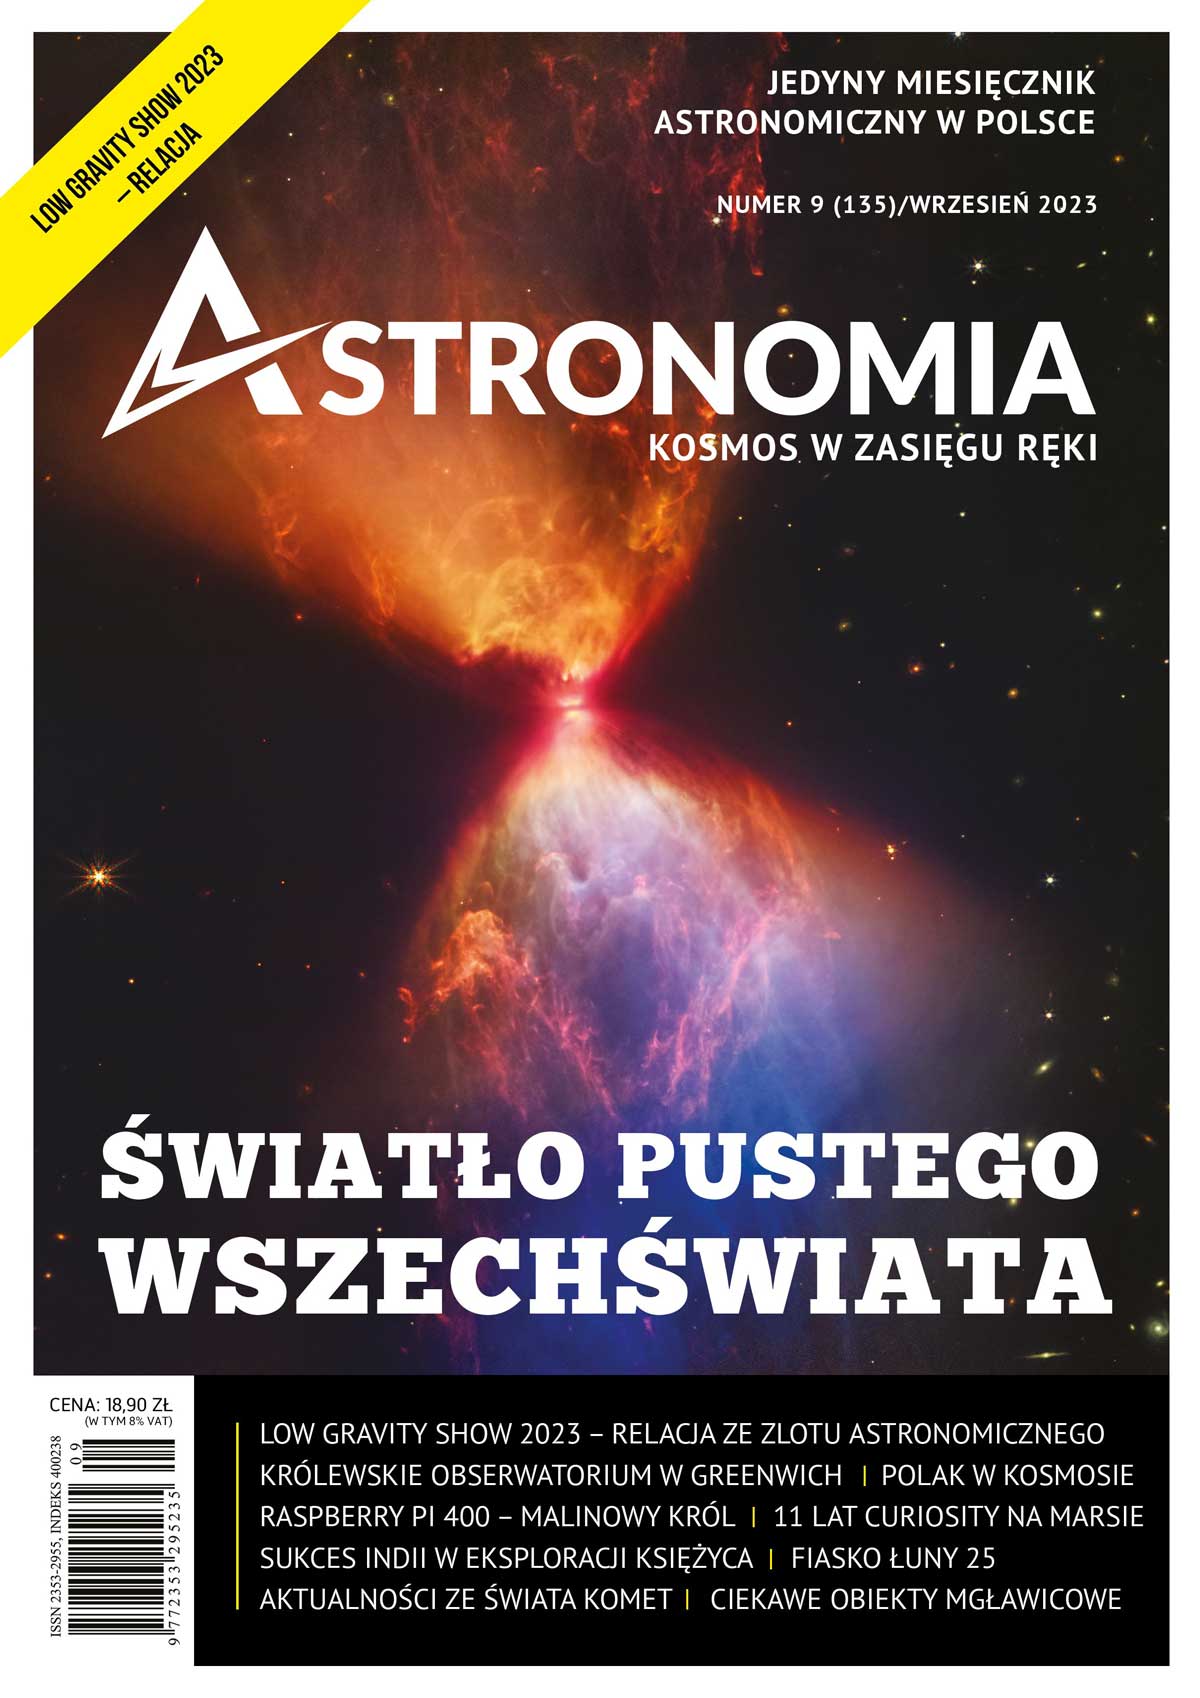 Astronomia - wrzesień 2023 (135)